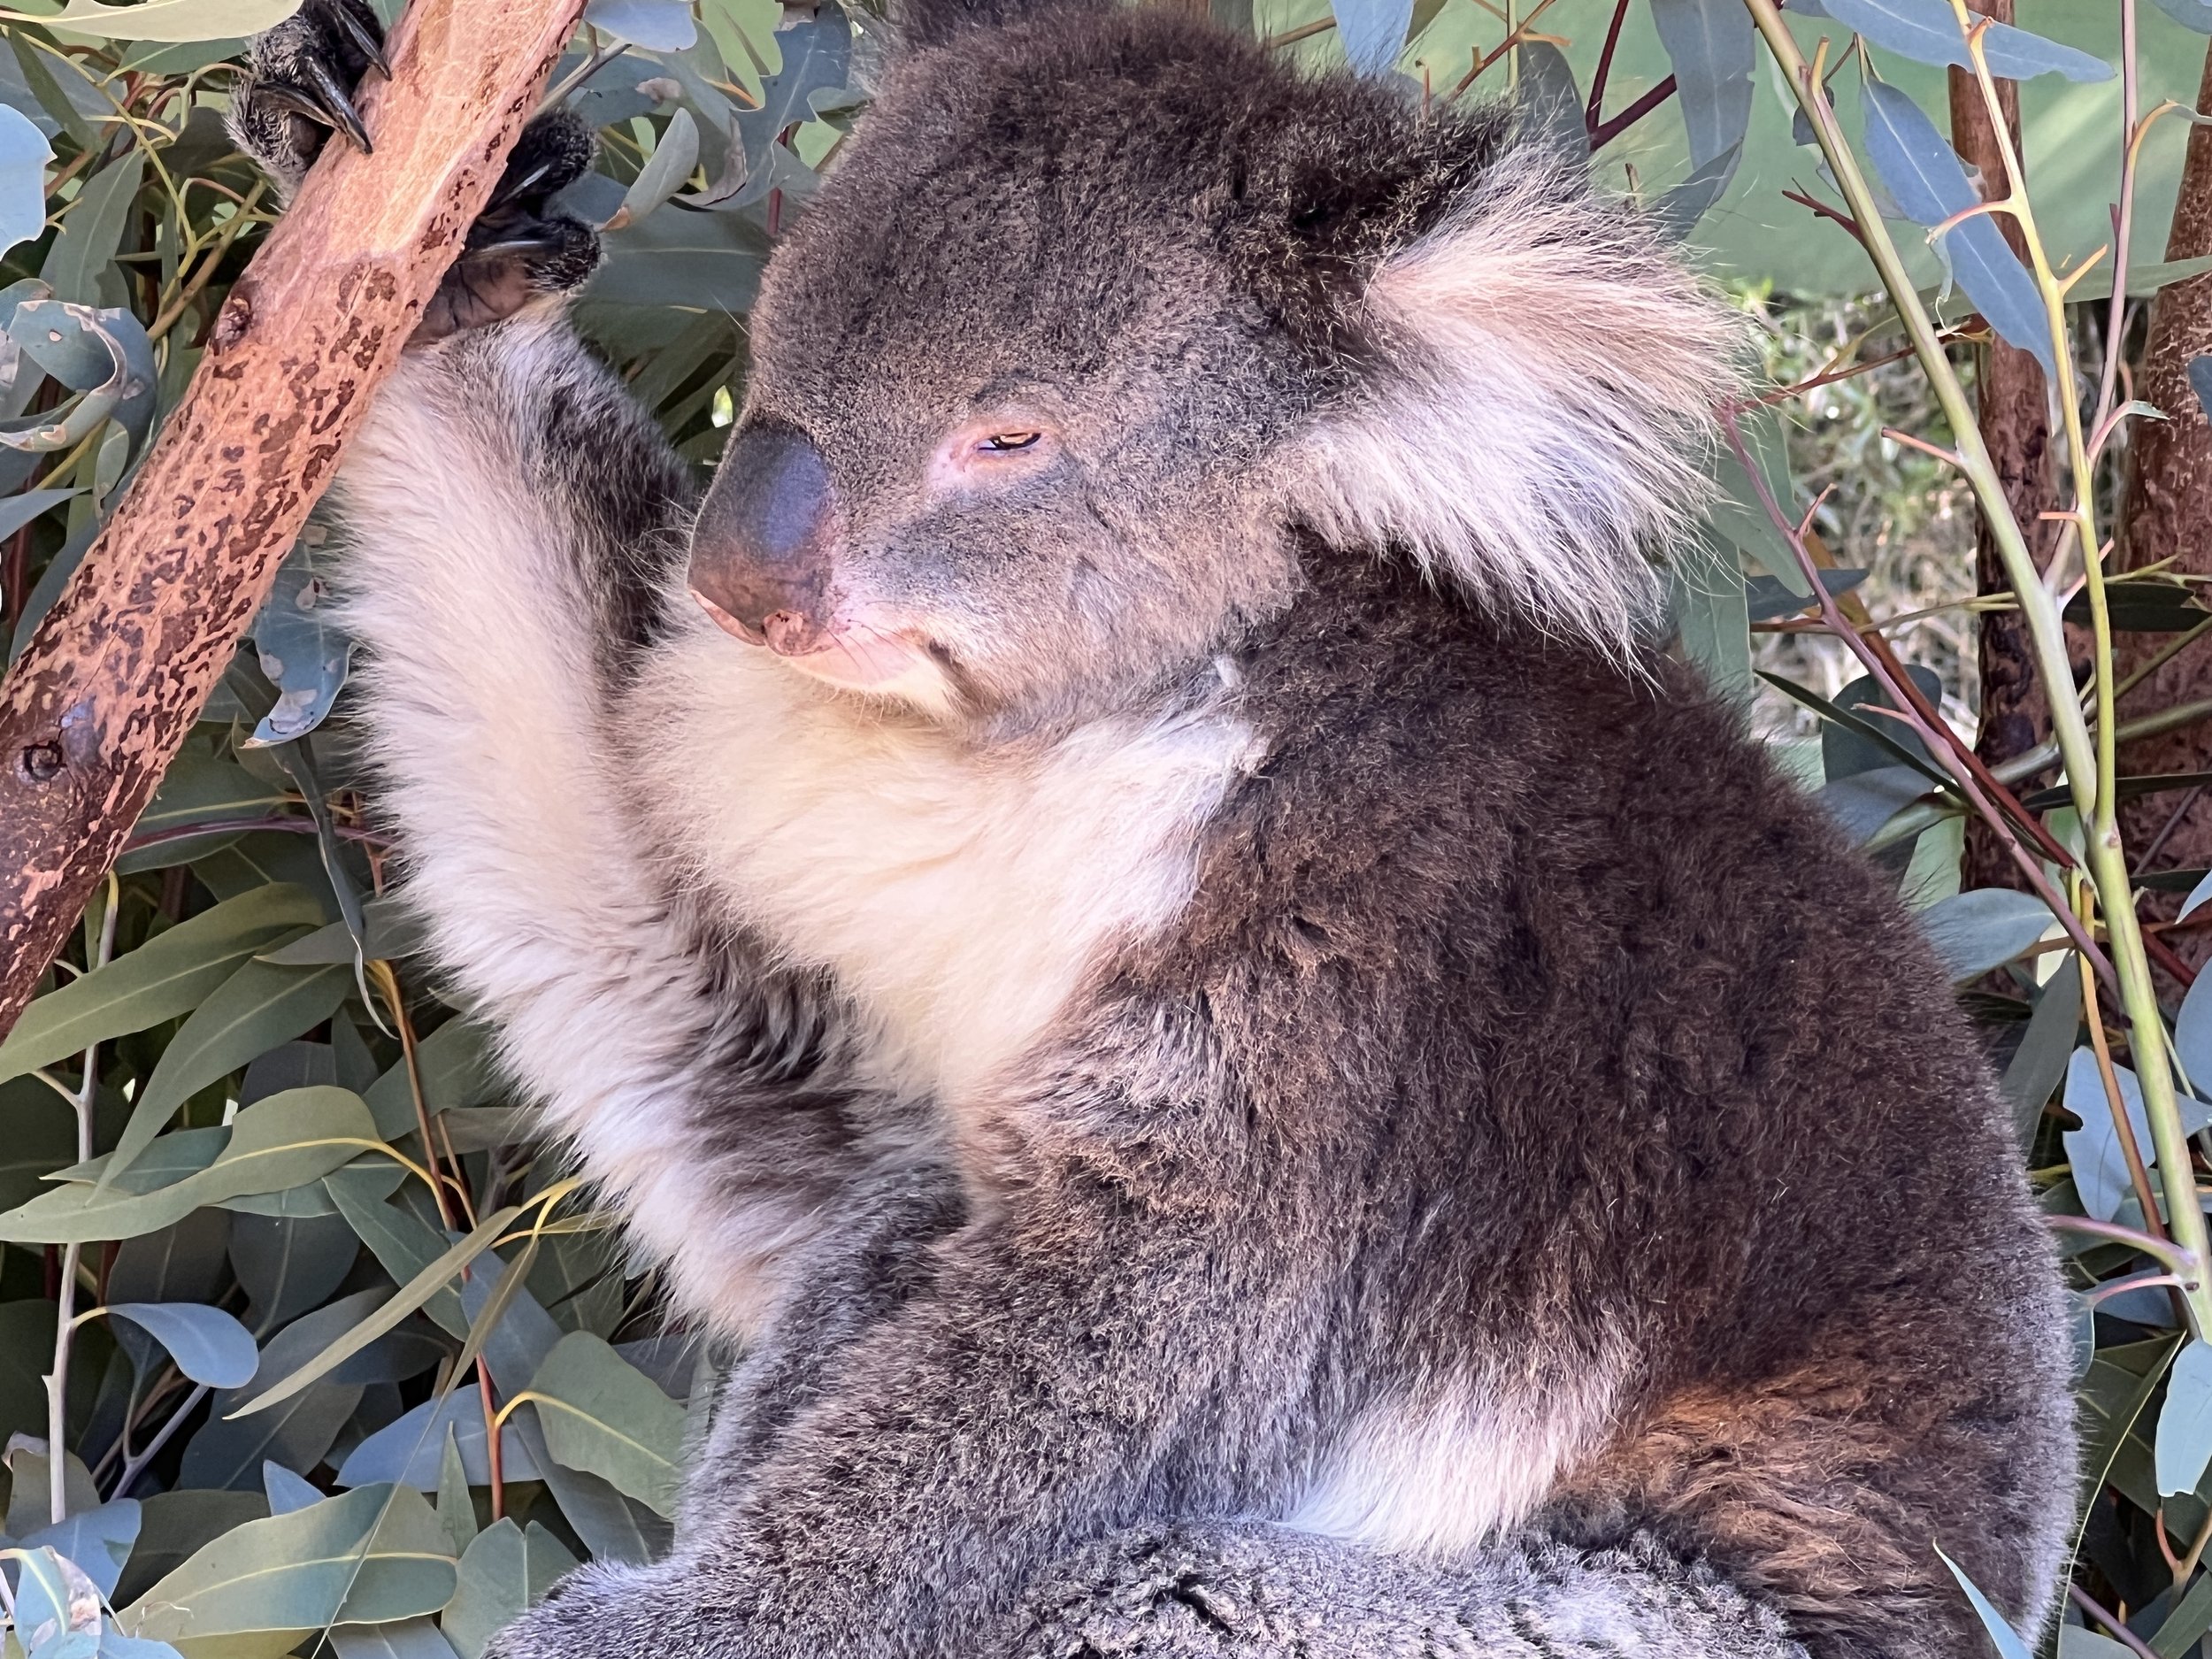 More koala pics